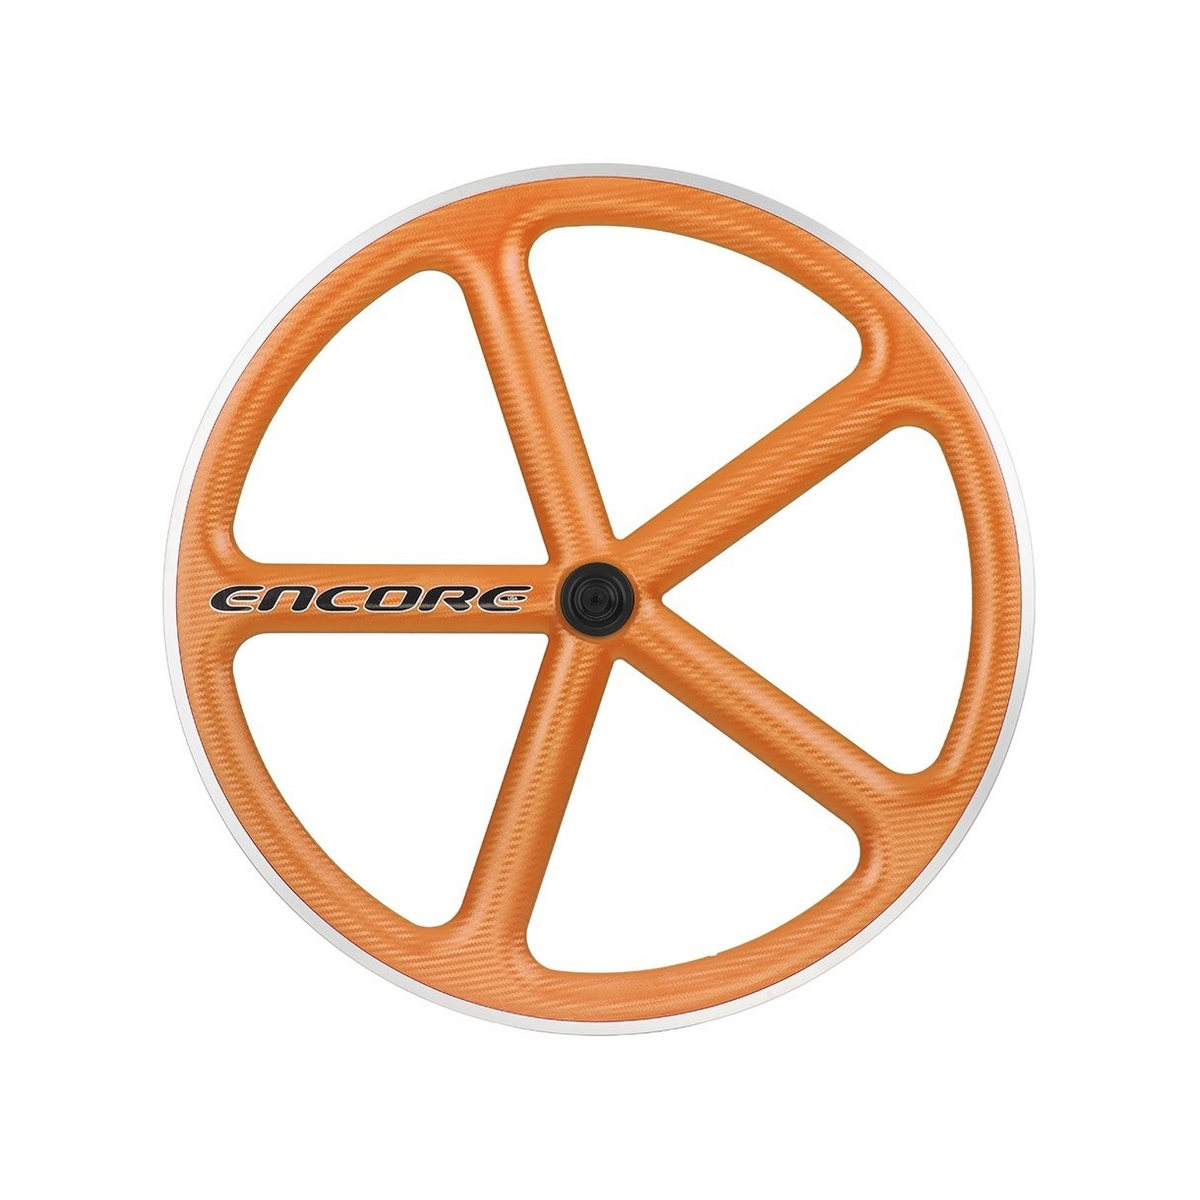 rear wheel 700c track 5 spokes carbon weave orange msw